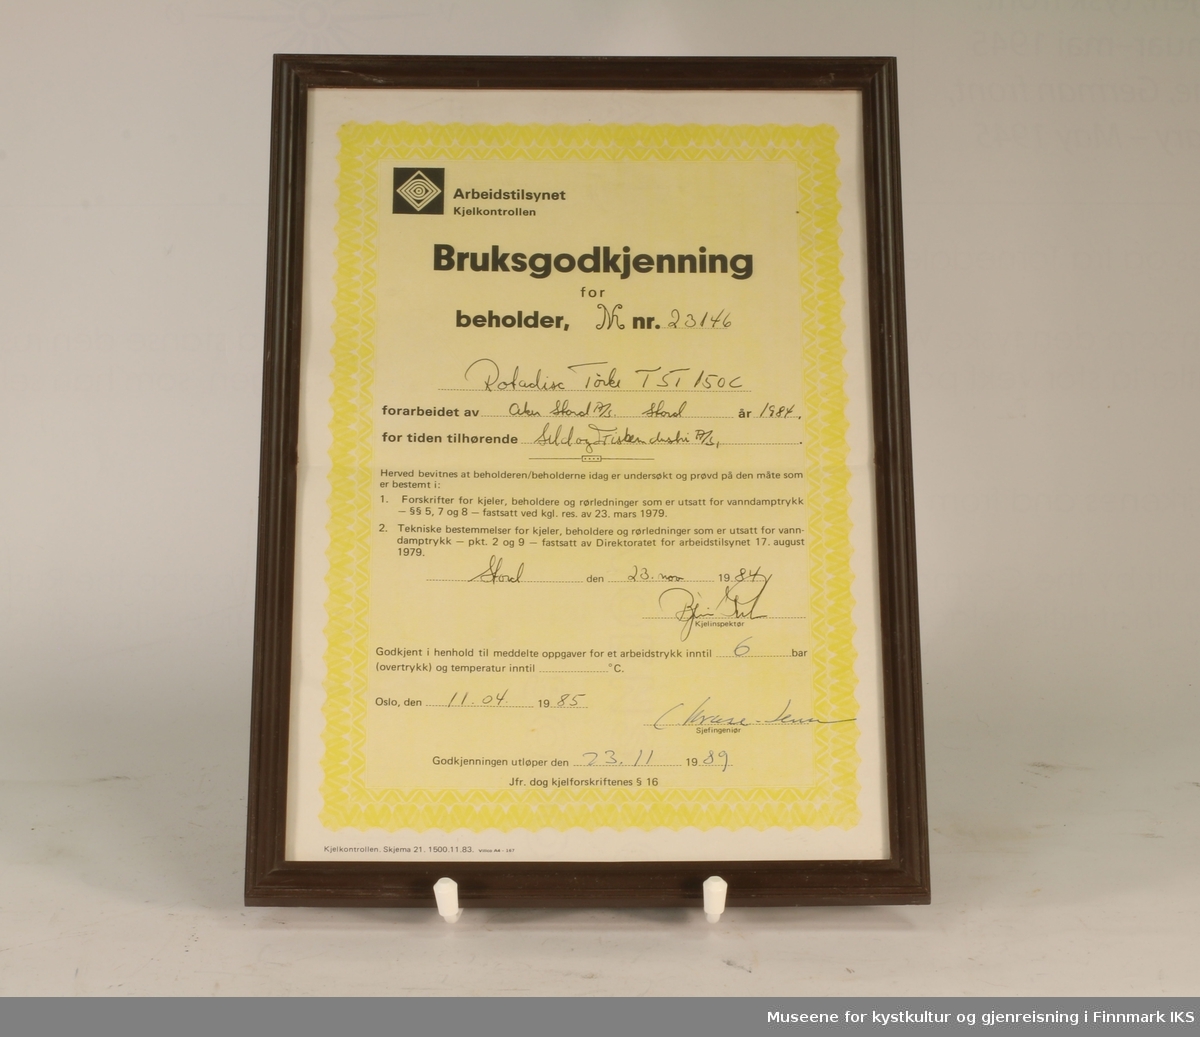 Bruksgodkjenning for Rotadisc Tørk TST 150C (beholder nr. 23146) hos Sild & Fiskeindustri AS, utsendt av Arbeidstilsynet Kjelkontrollen i 1985. Hvitt og gult papir med sort tekst. Utfylt for hånd. Innrammet.